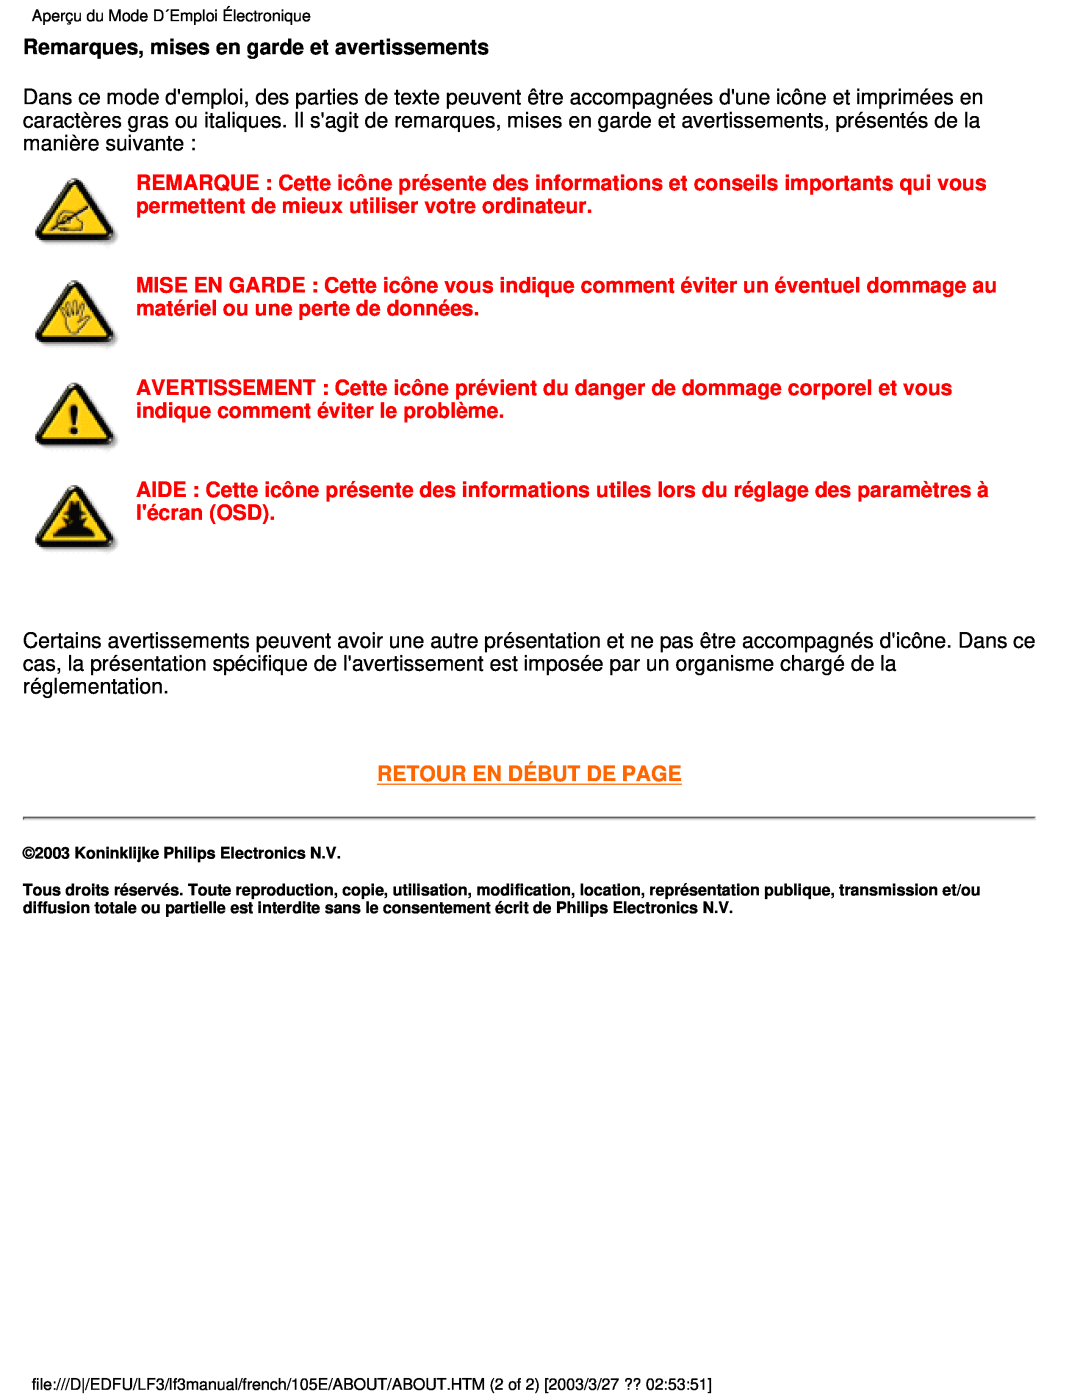 Philips 105E Remarques, mises en garde et avertissements, Retour En Début De Page, Koninklijke Philips Electronics N.V 